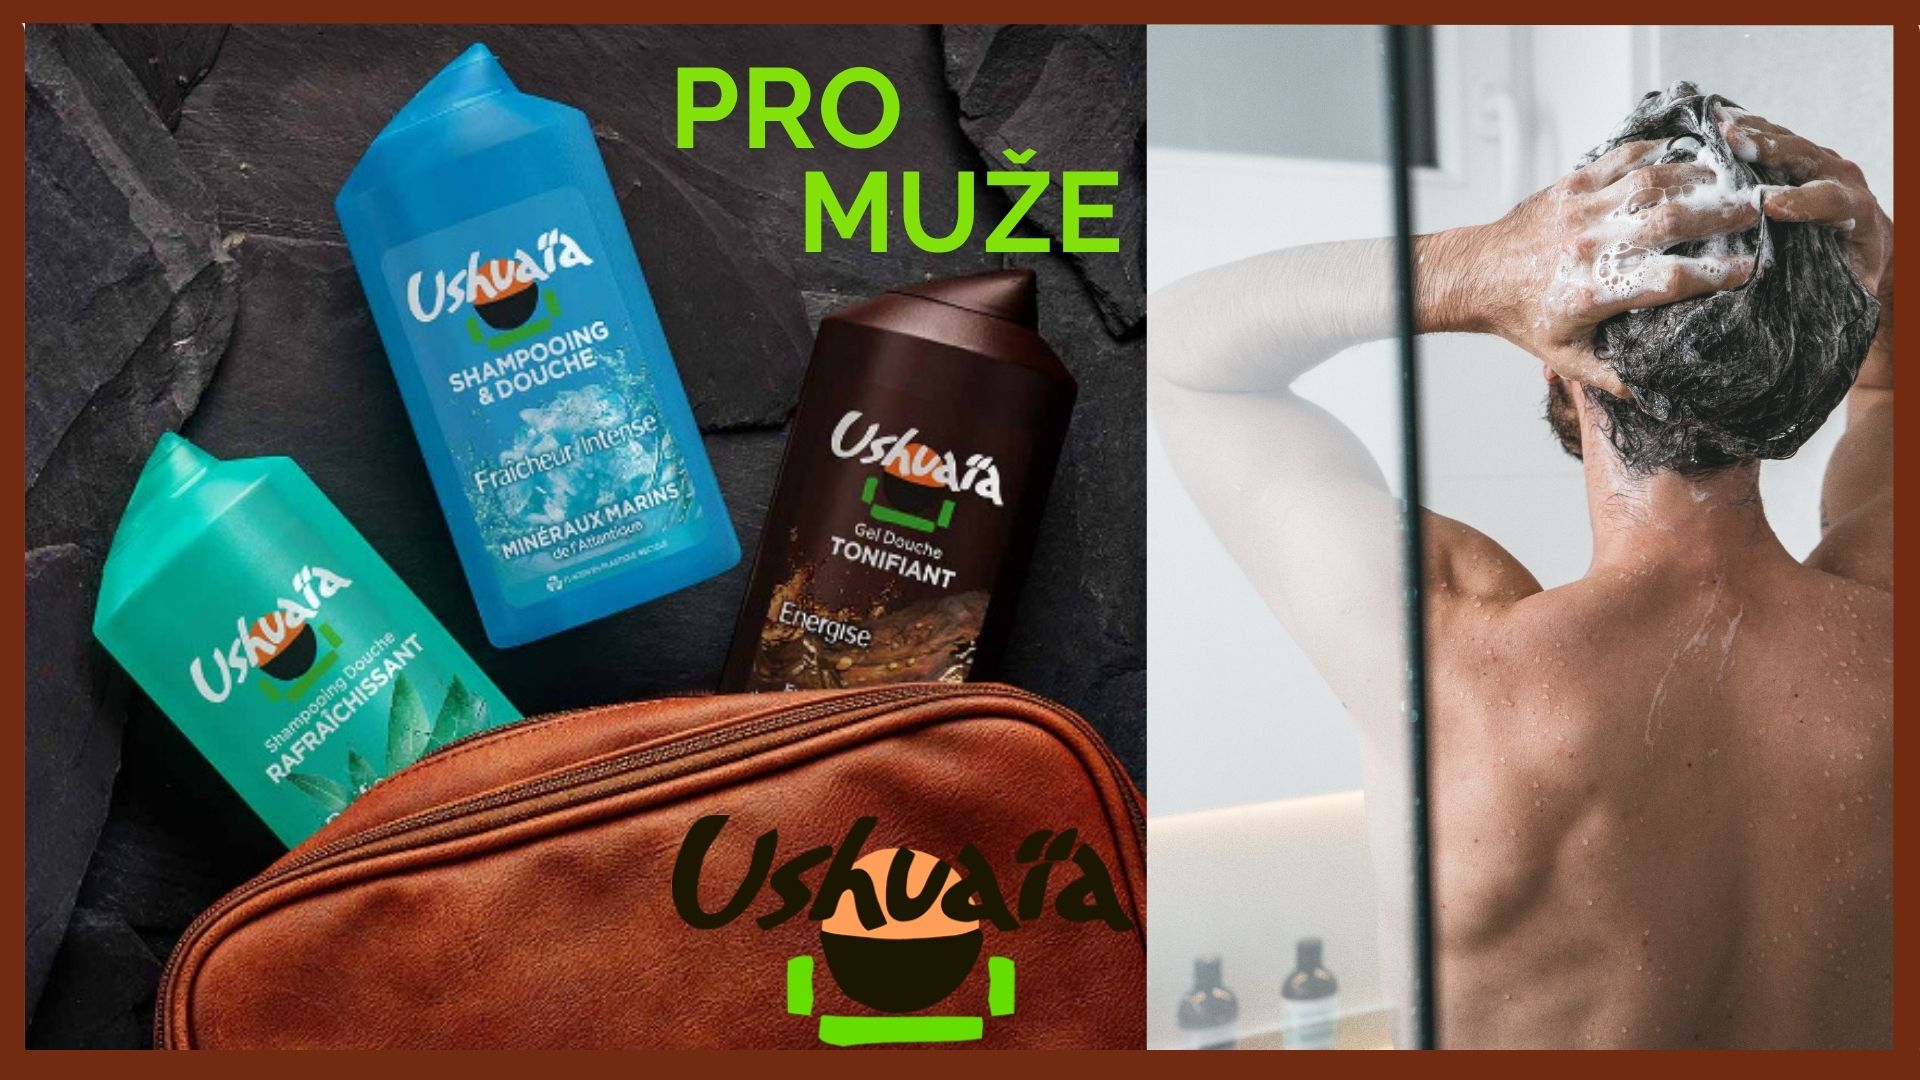 Sprchové gely a šampony pro muže. Nabízíme kvalitní pánskou kosmetiku od francouzských značek Ushuaia a Le Petit Marsseillais.